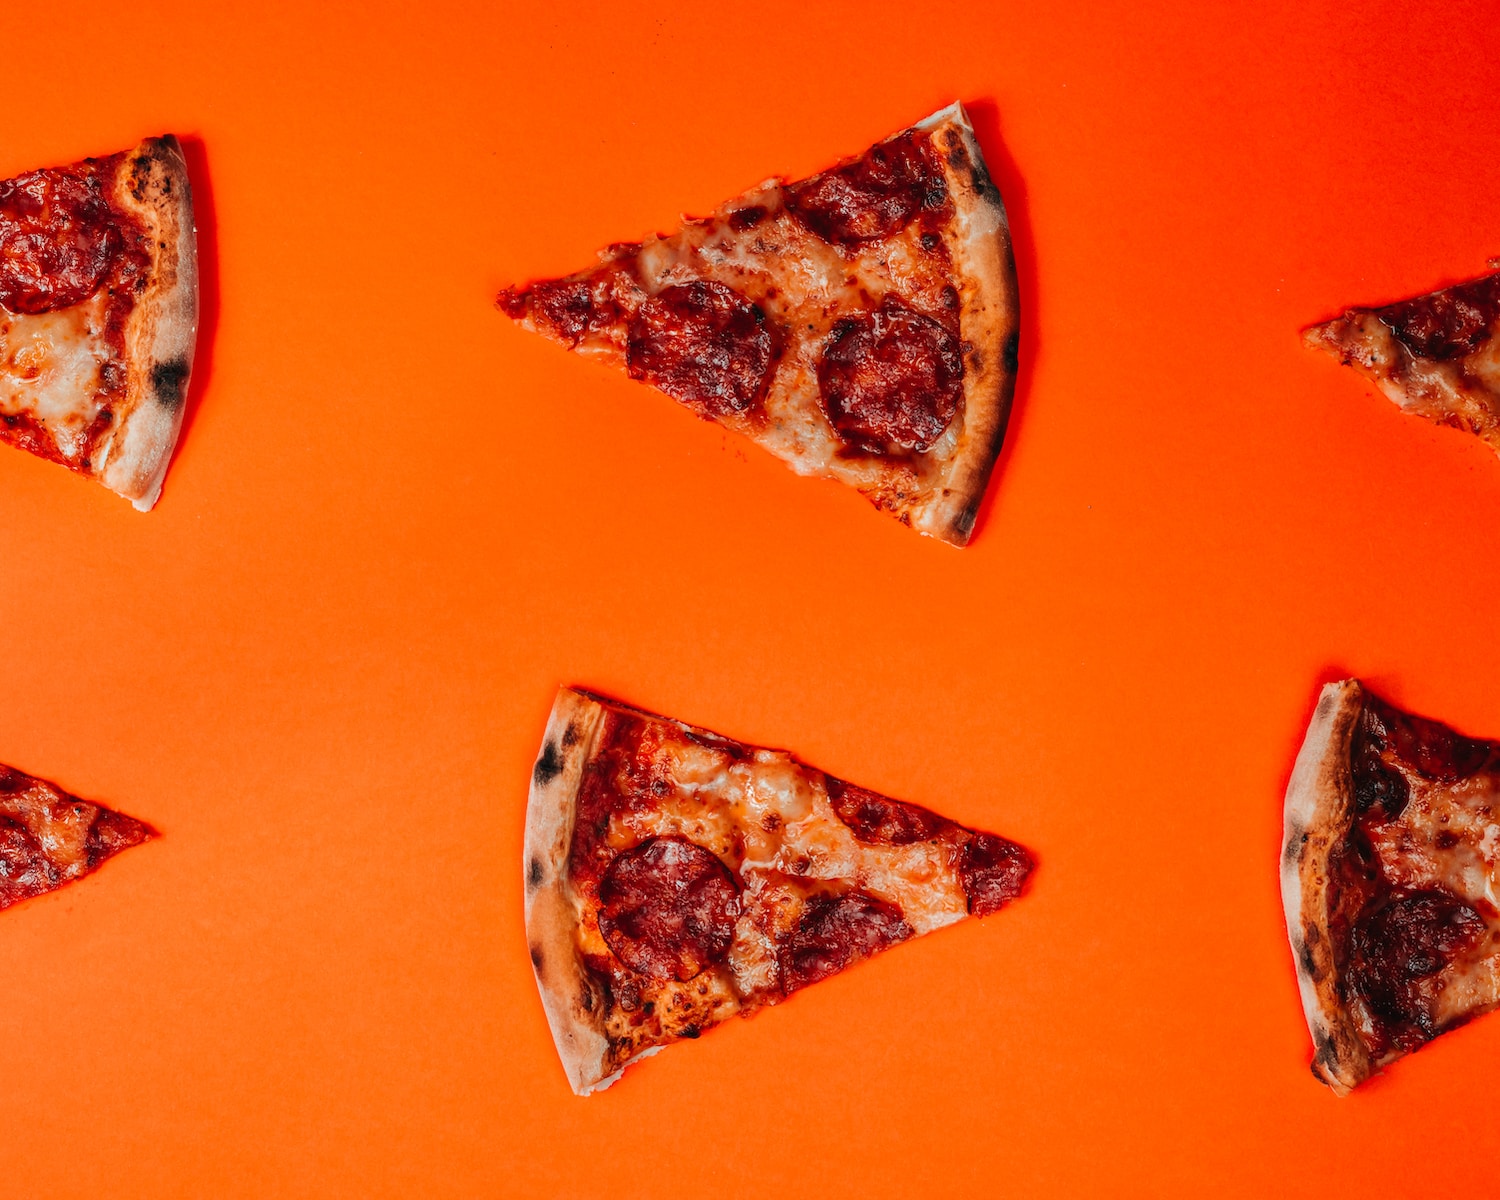 Pizza bez sera – czy to w ogóle pizza?